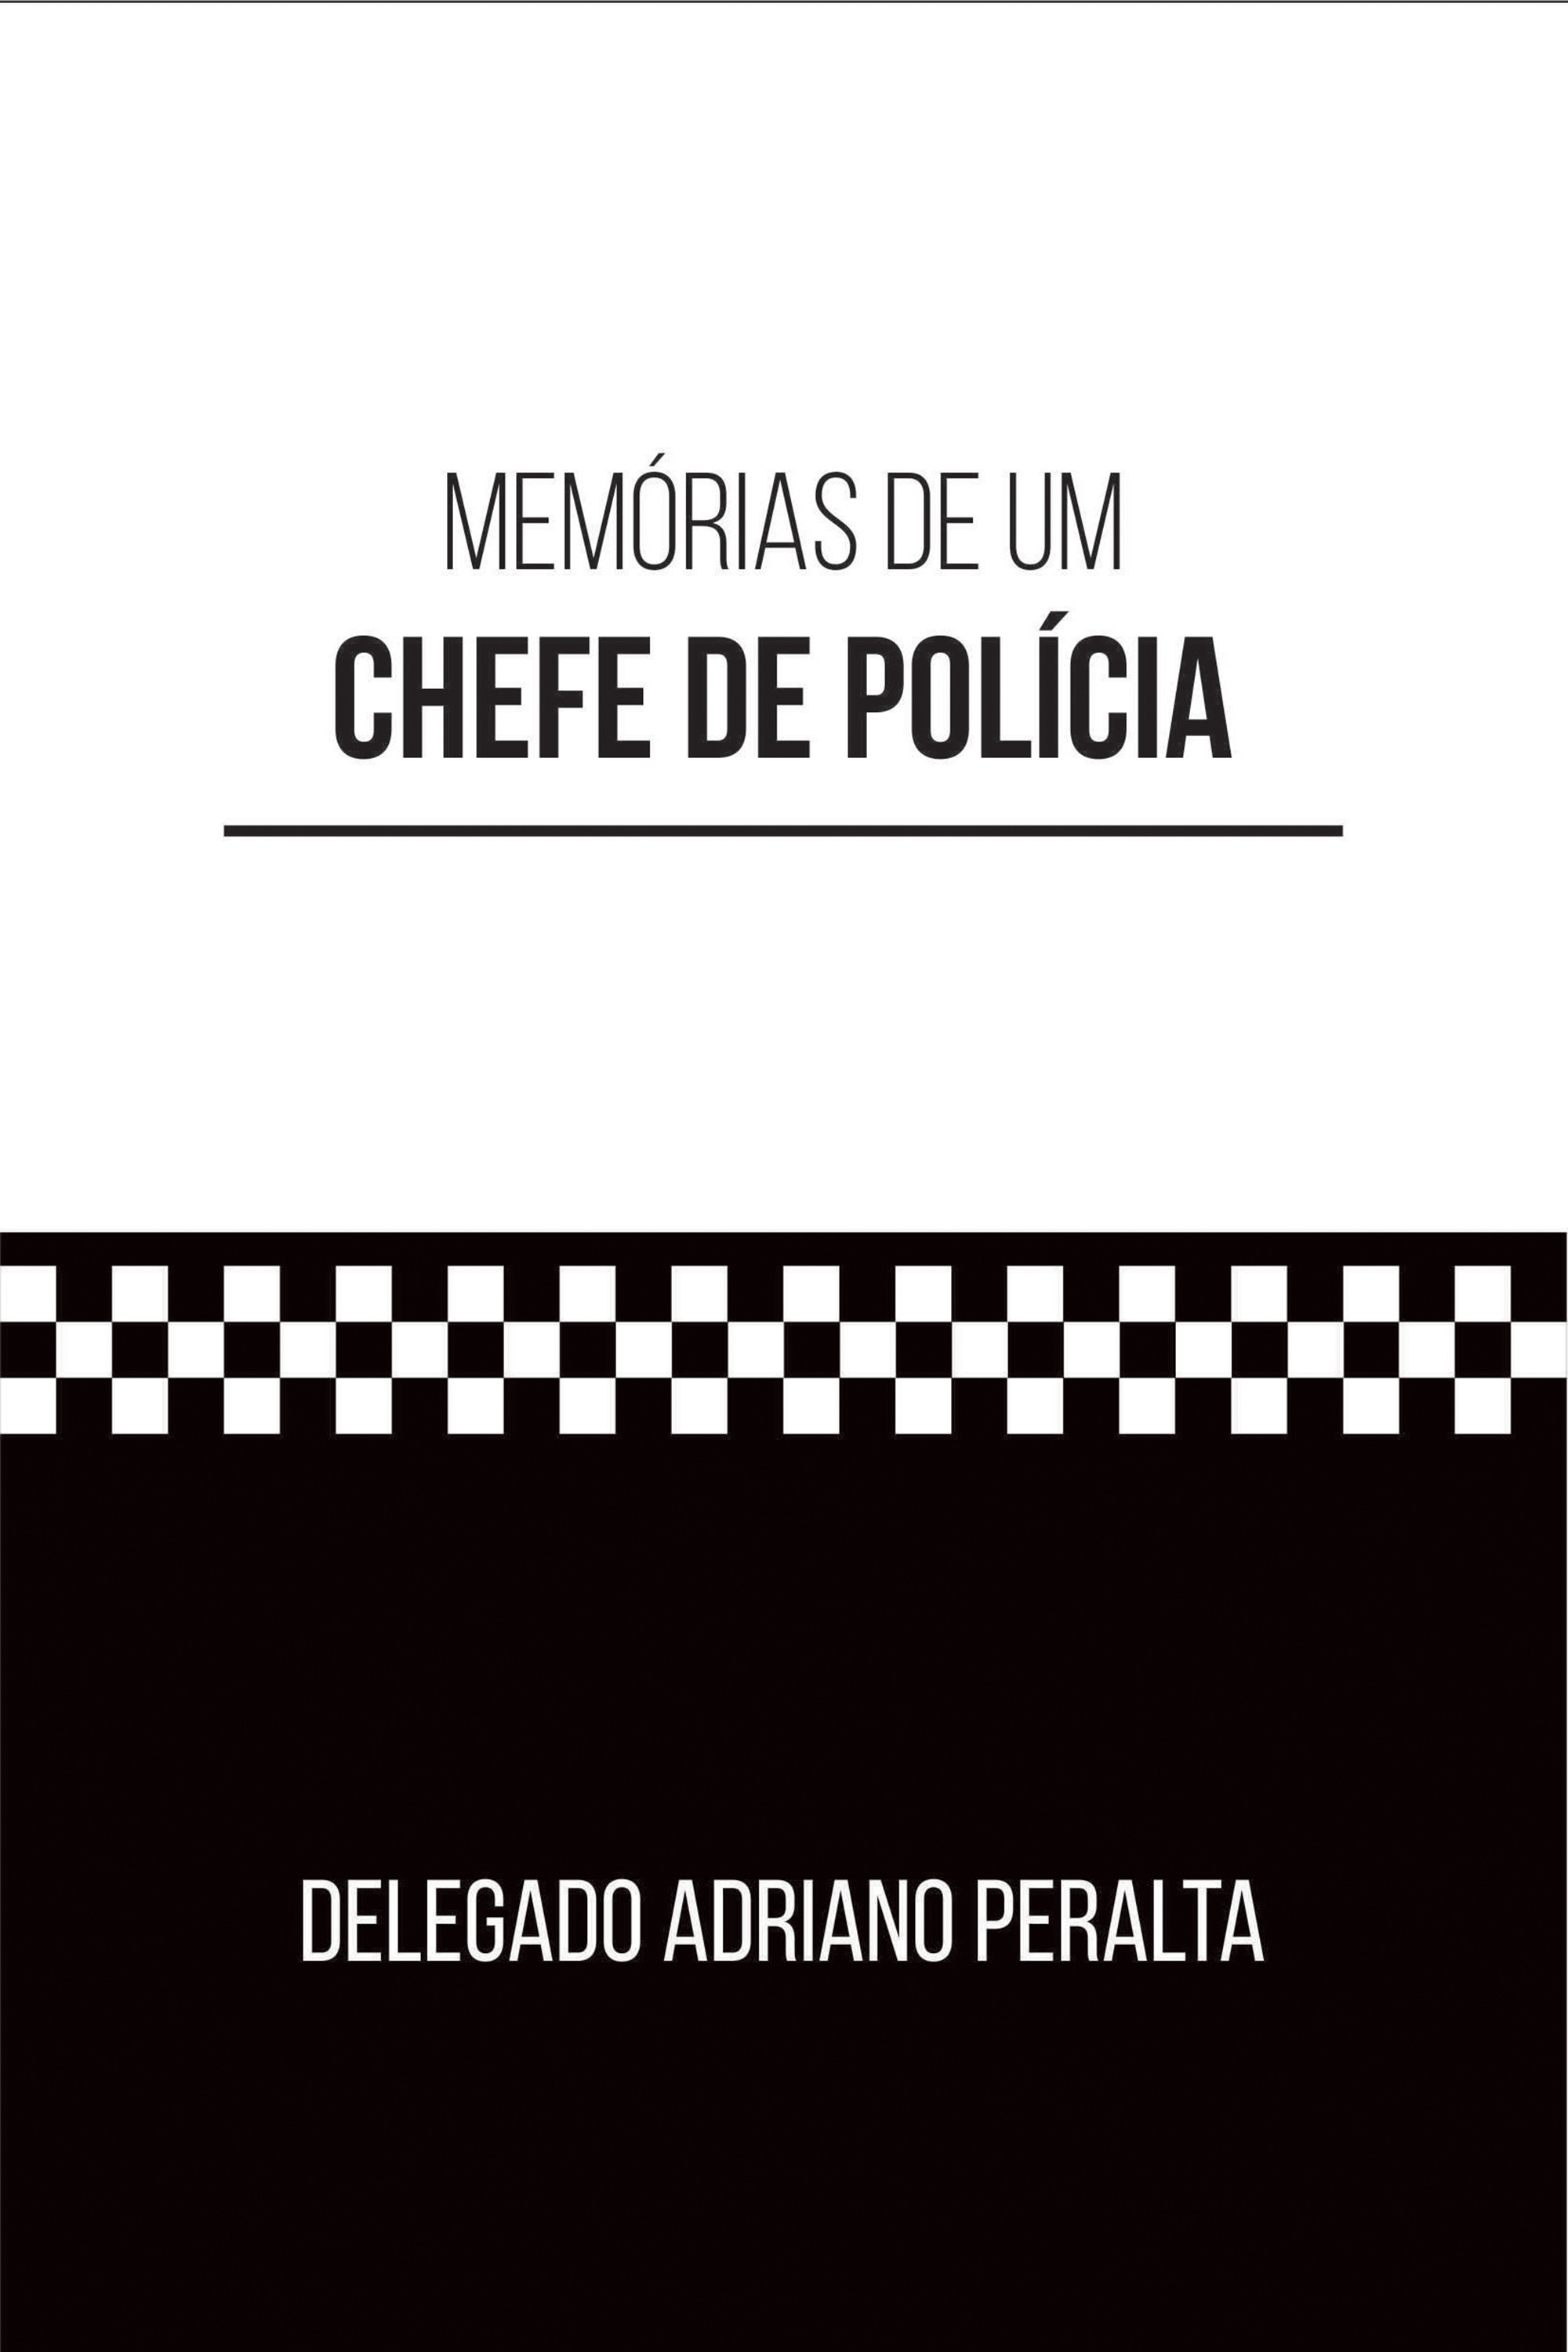 Memórias de um CHEFE DE POLÍCIA